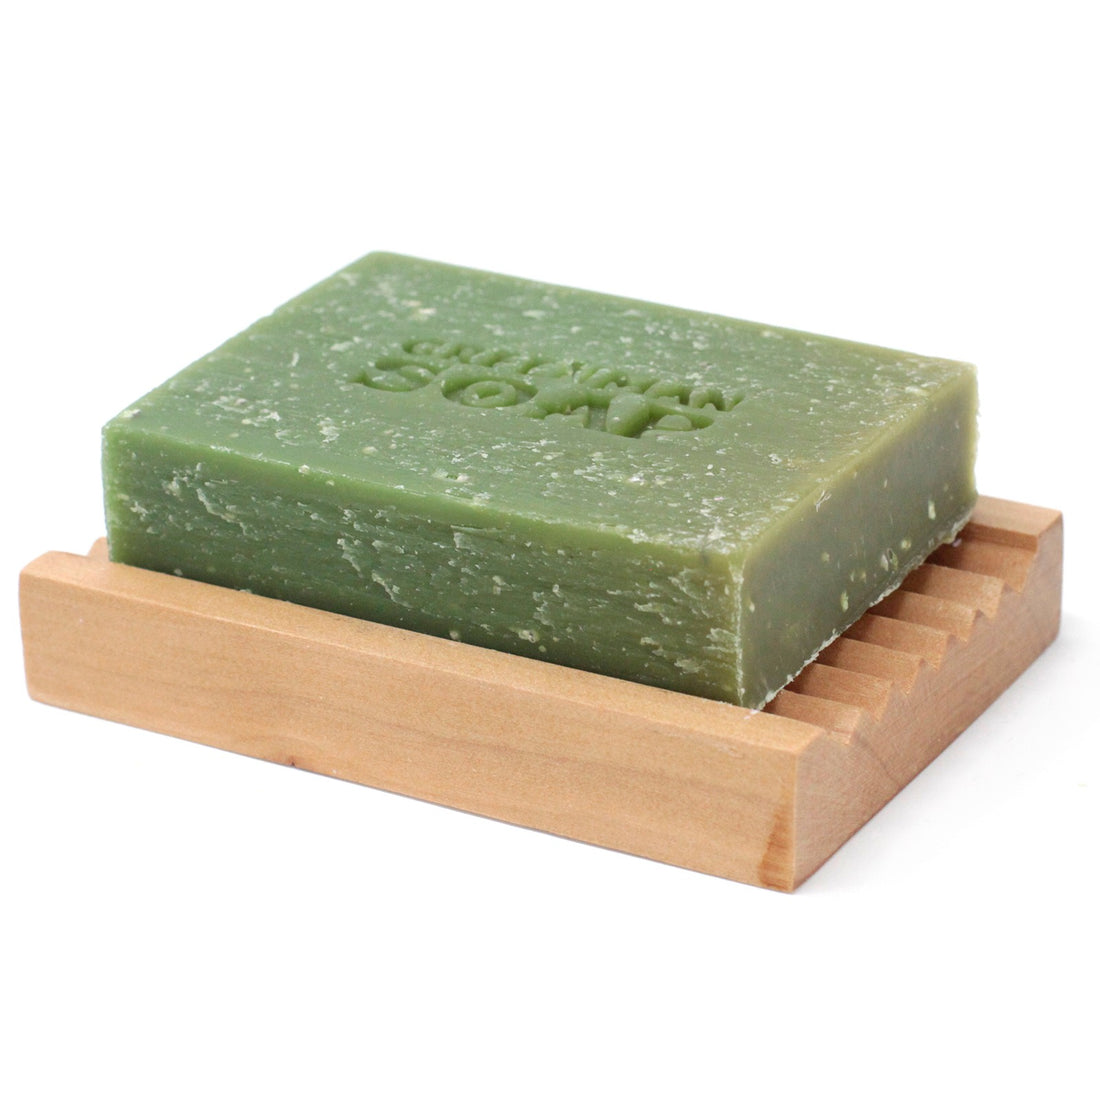 Greenman Soap Slice 100g - Gardener's Scrub